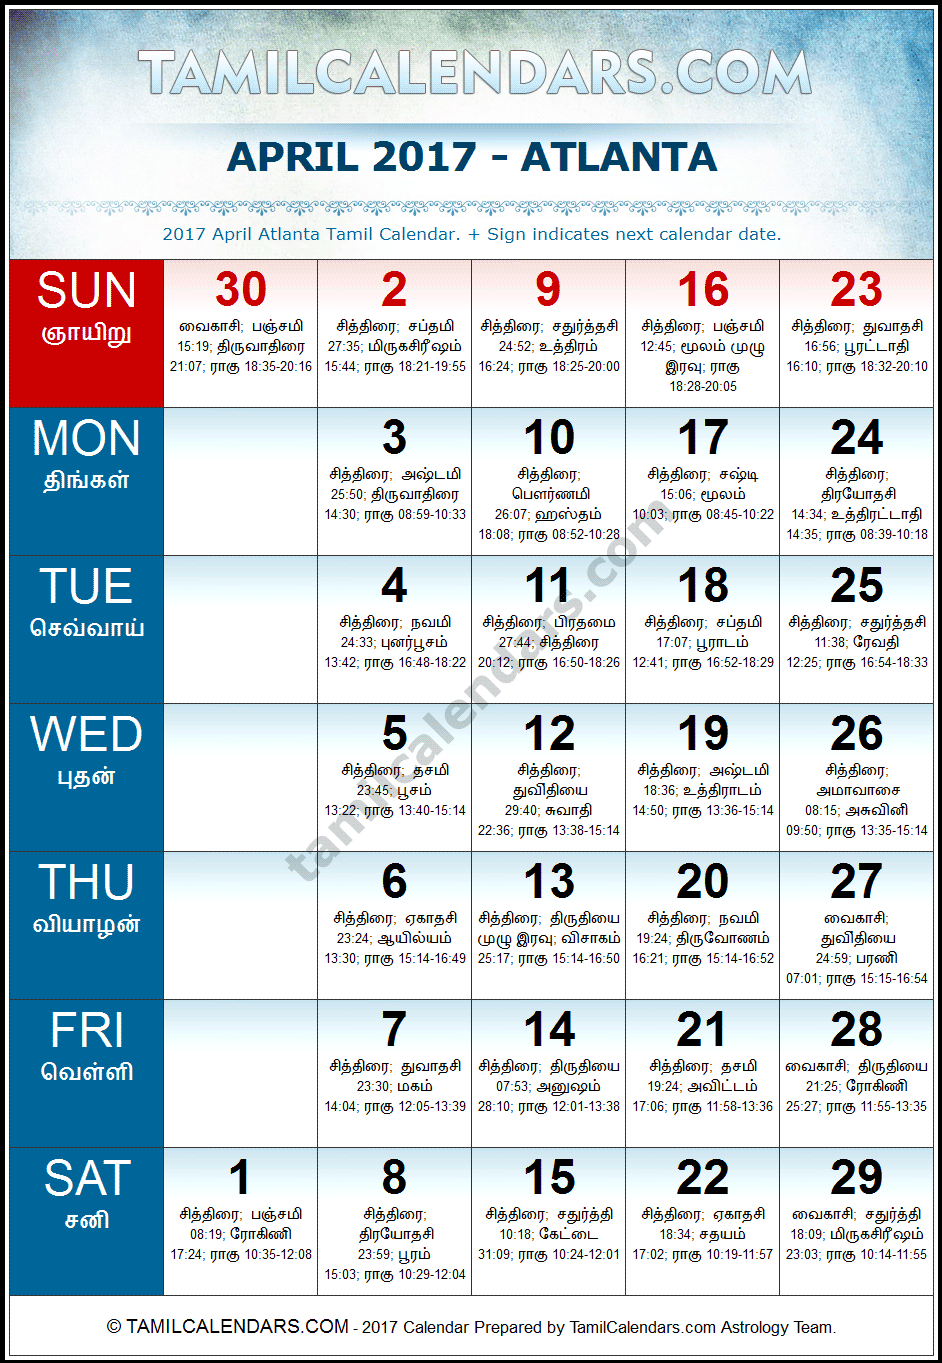 April 2017 Tamil Calendar for Atlanta, USA